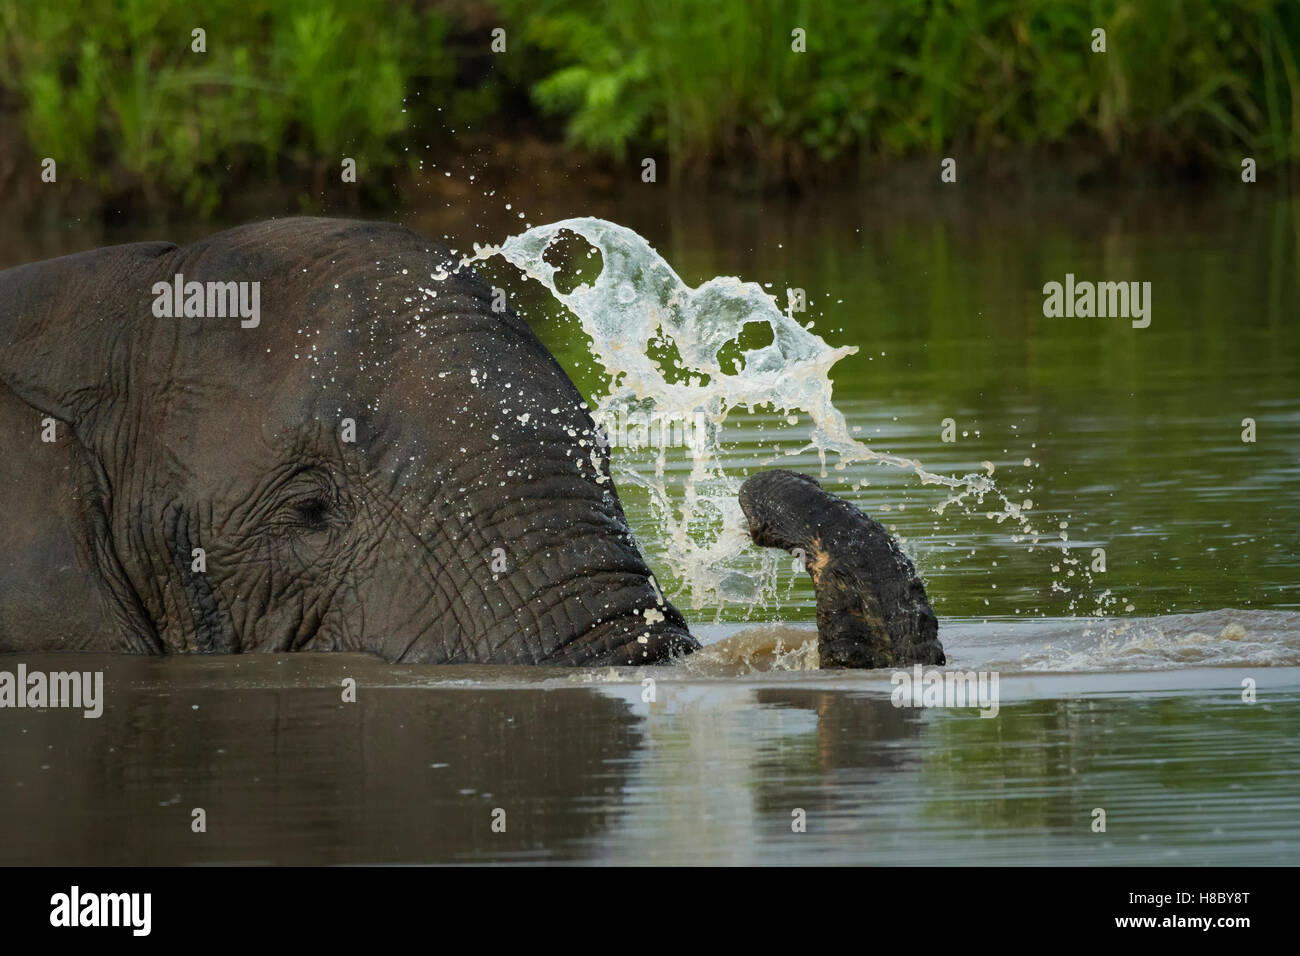 Ritratto di un elefante africano sommerso in acqua in acqua la spruzzatura di acqua con il suo tronco Foto Stock